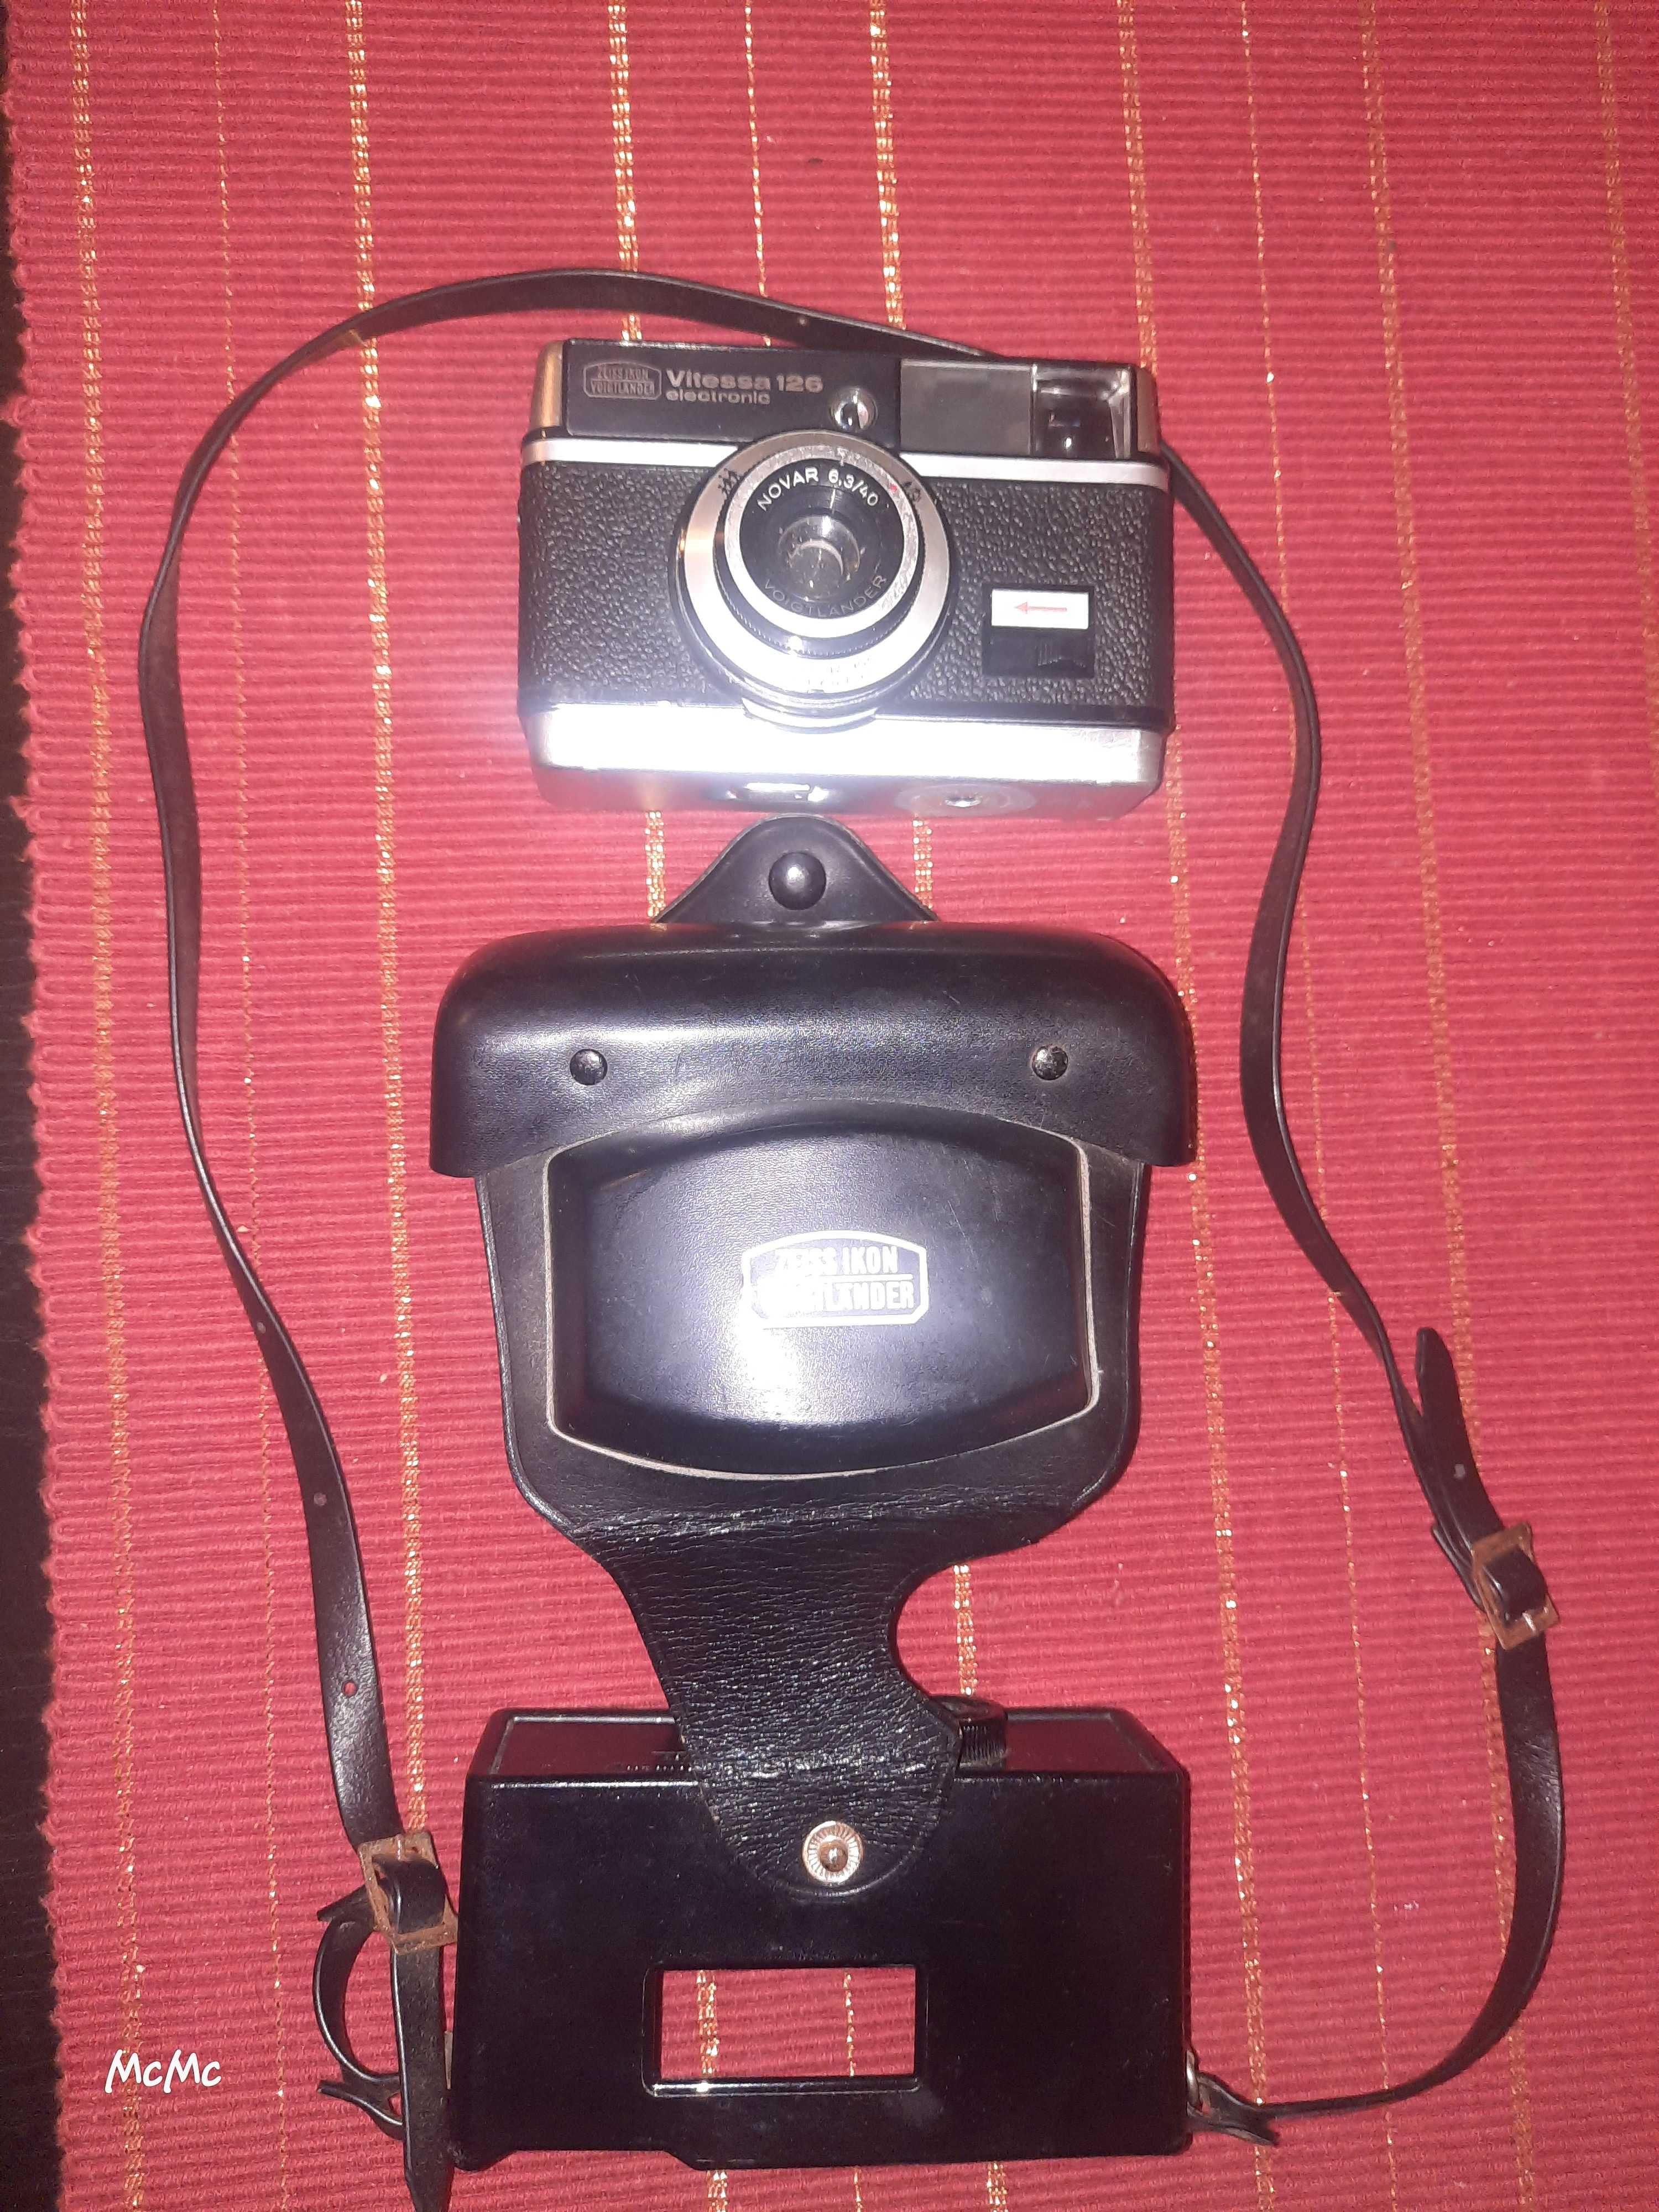 Maquinas fotográficas antigas